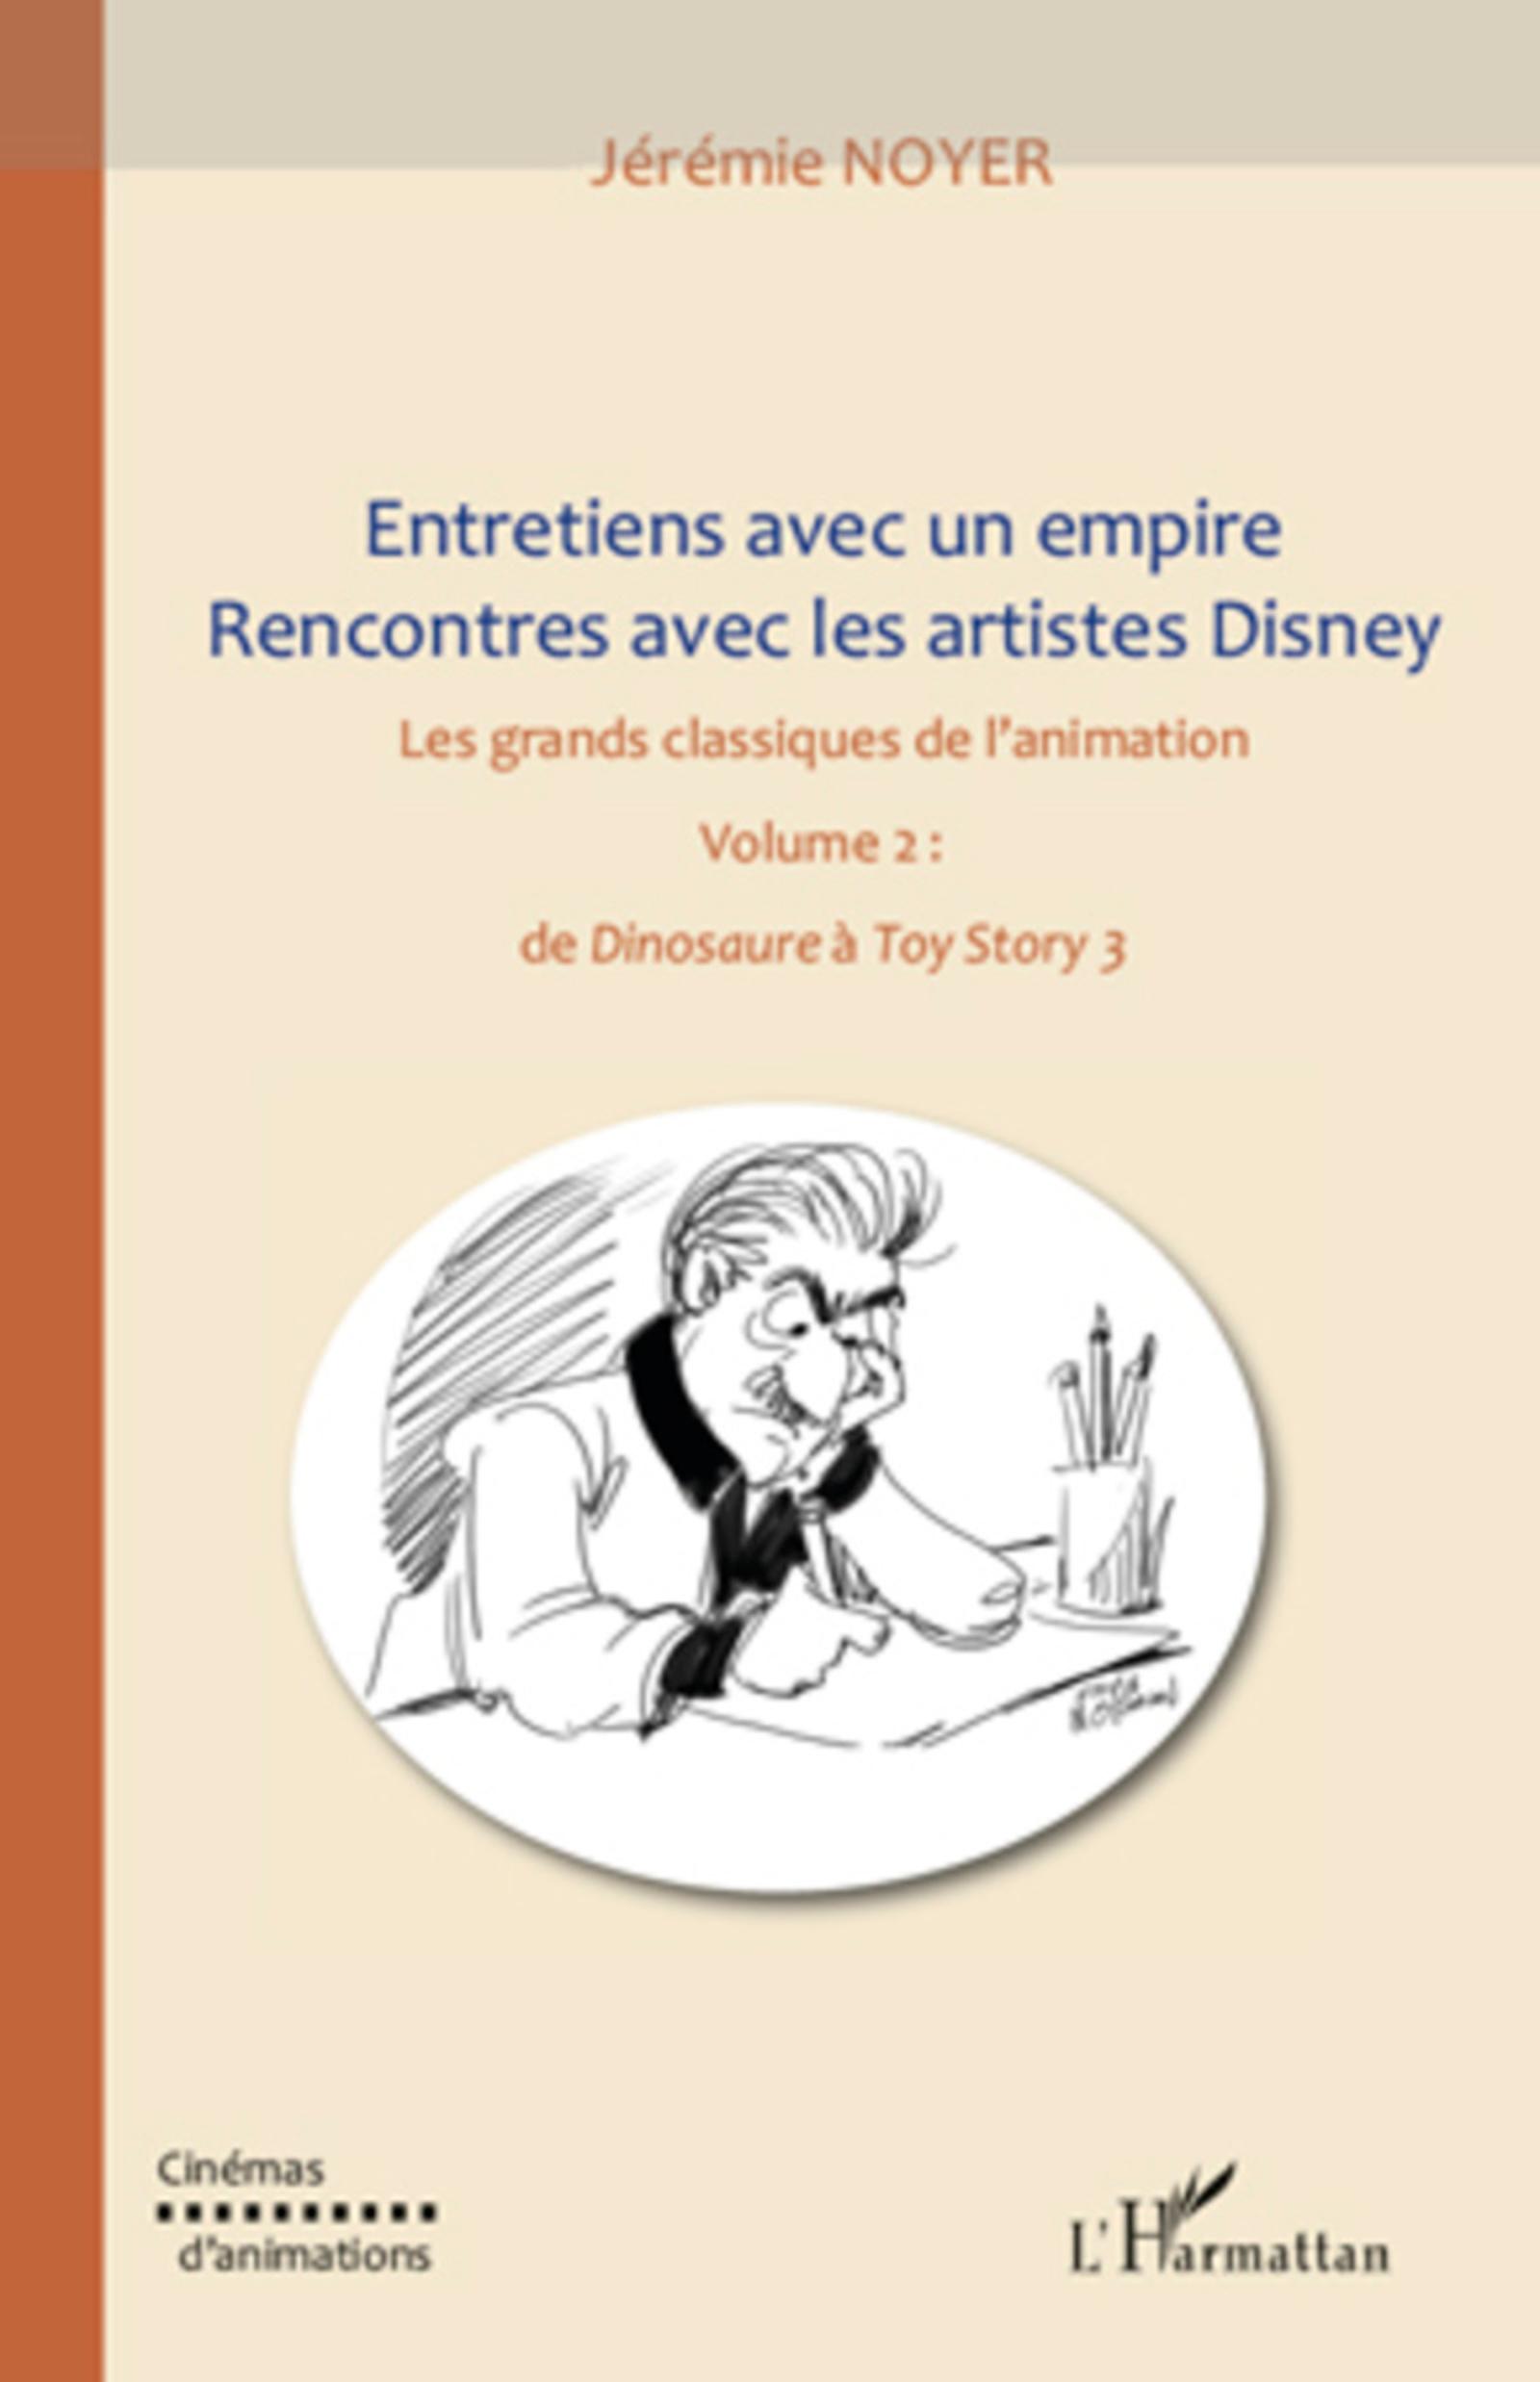 Entretiens avec un empire, rencontres avec les artistes Disney (volume II) - Noyer, Jérémie